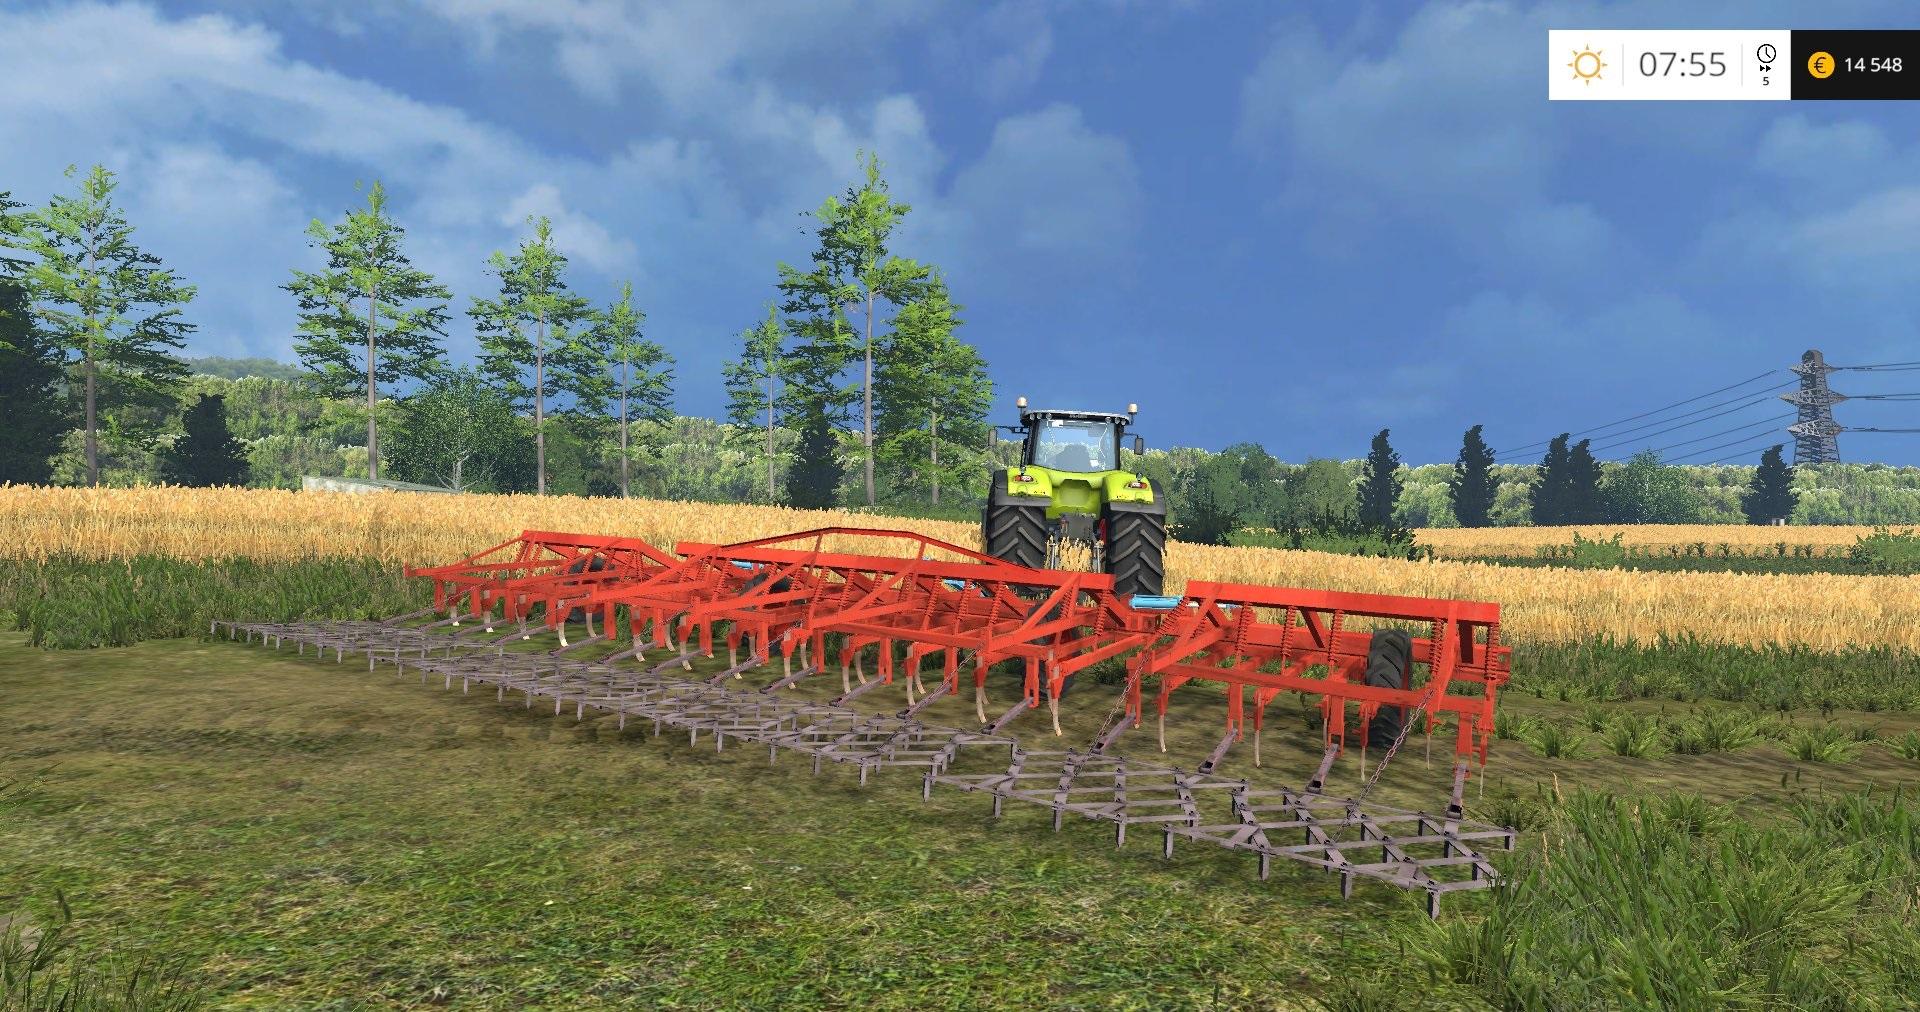 Cultivator Kps 8 V10 • Farming Simulator 19 17 22 Mods Fs19 17 22 Mods 6784